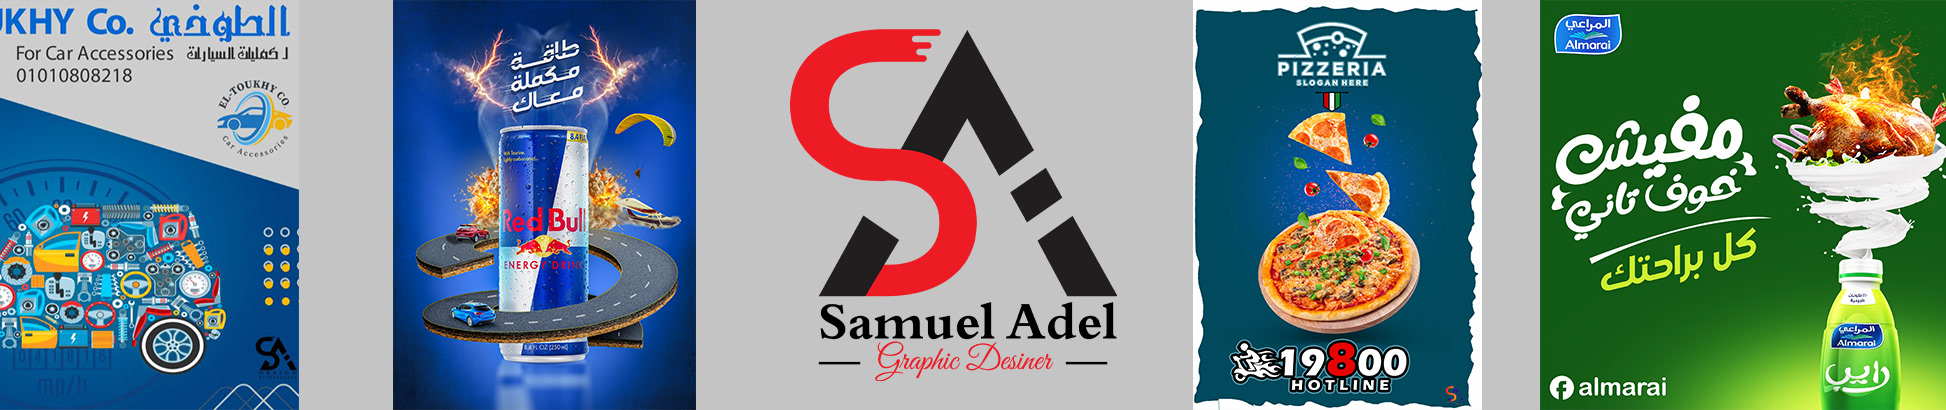 Bannière de profil de Samuel Adel